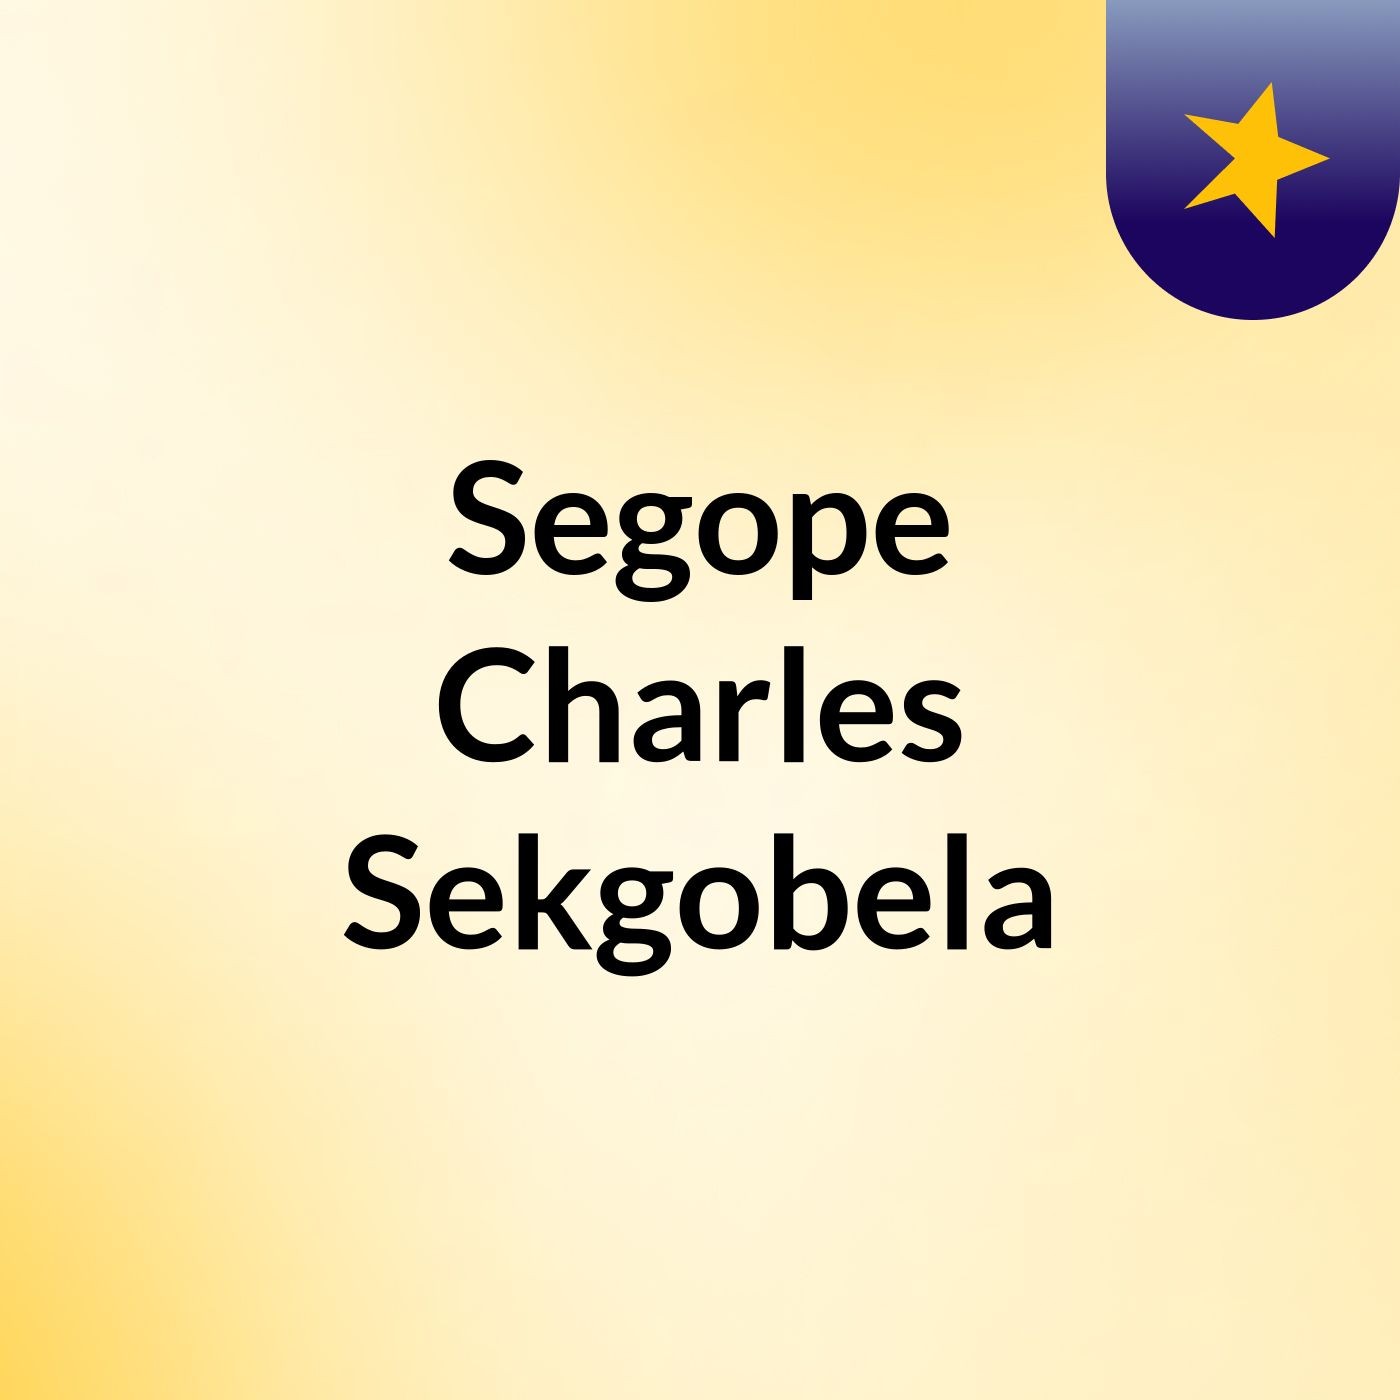 Segope Charles Sekgobela